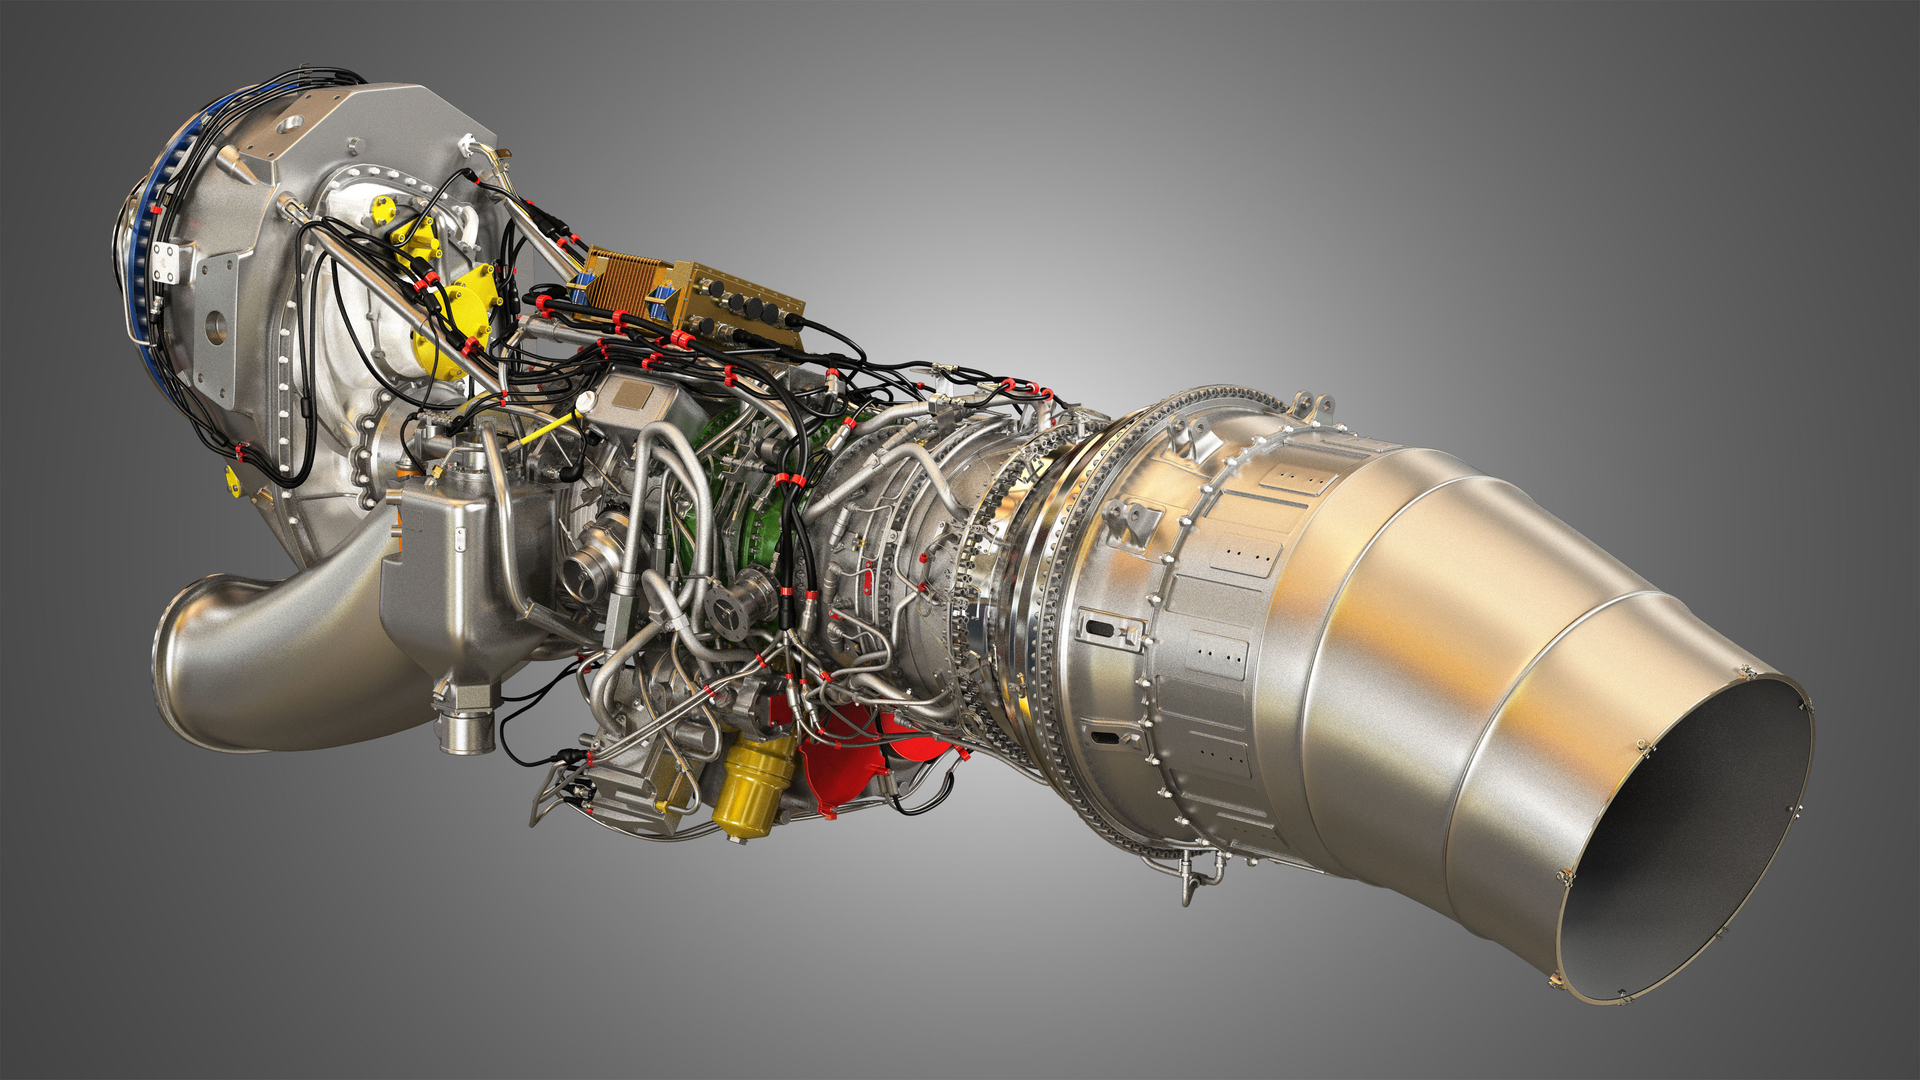 markos-3d-airbus-engine-tp400--4-8fb493e0-ixxu.jpg